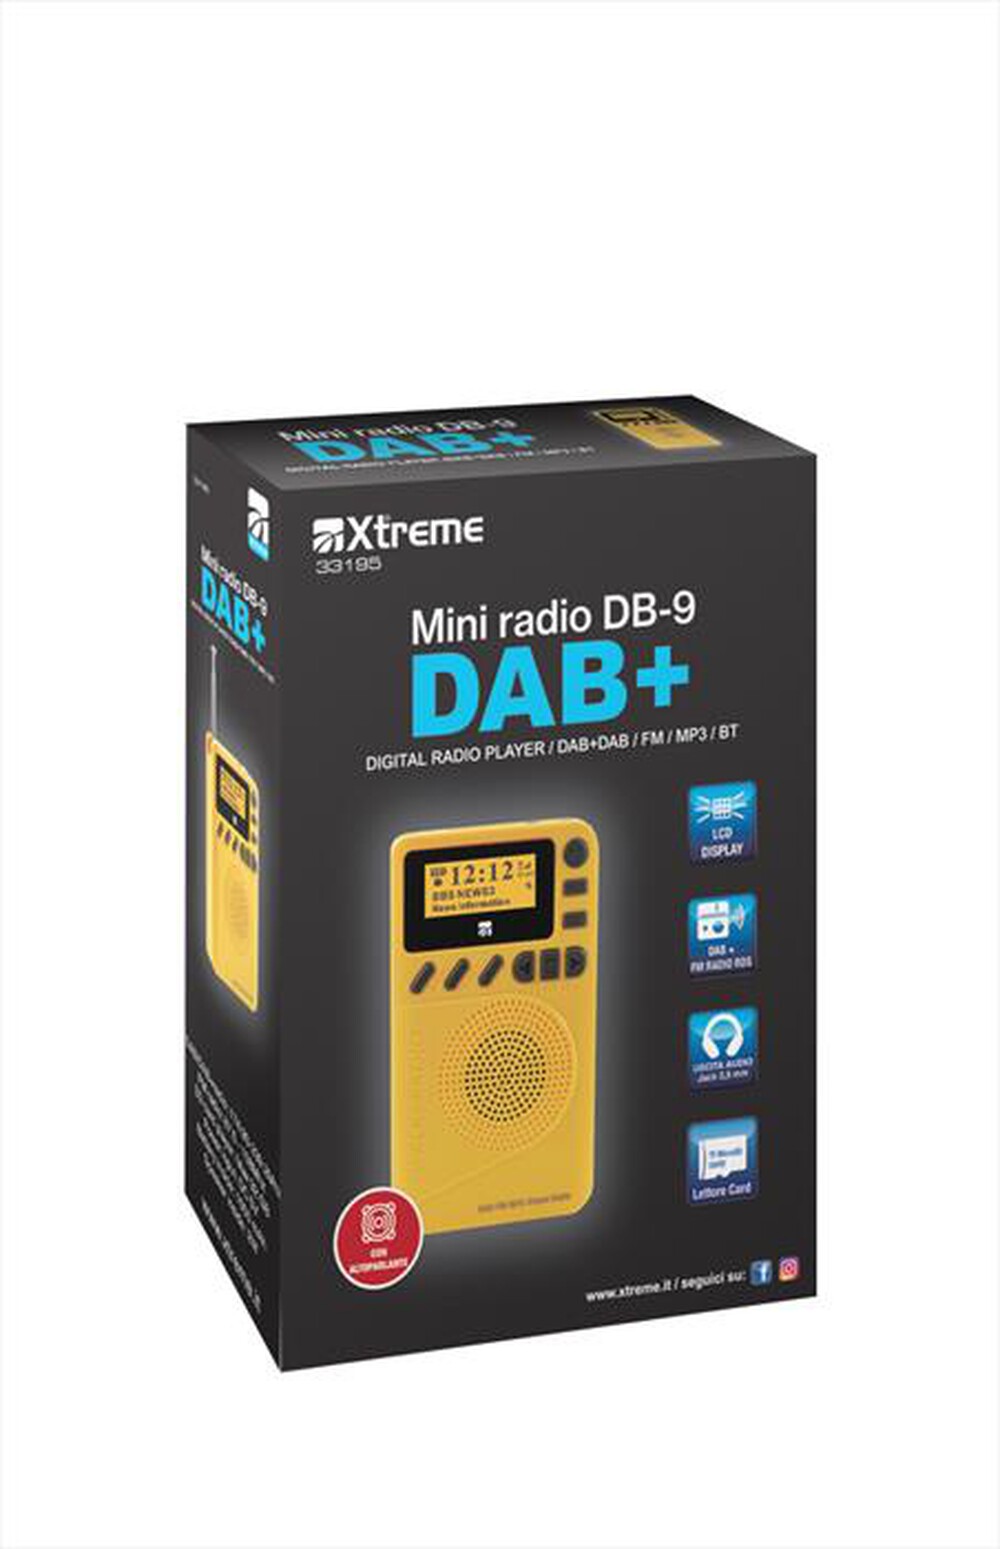 "XTREME - MINI RADIO DAB+ DB-9-NERO"